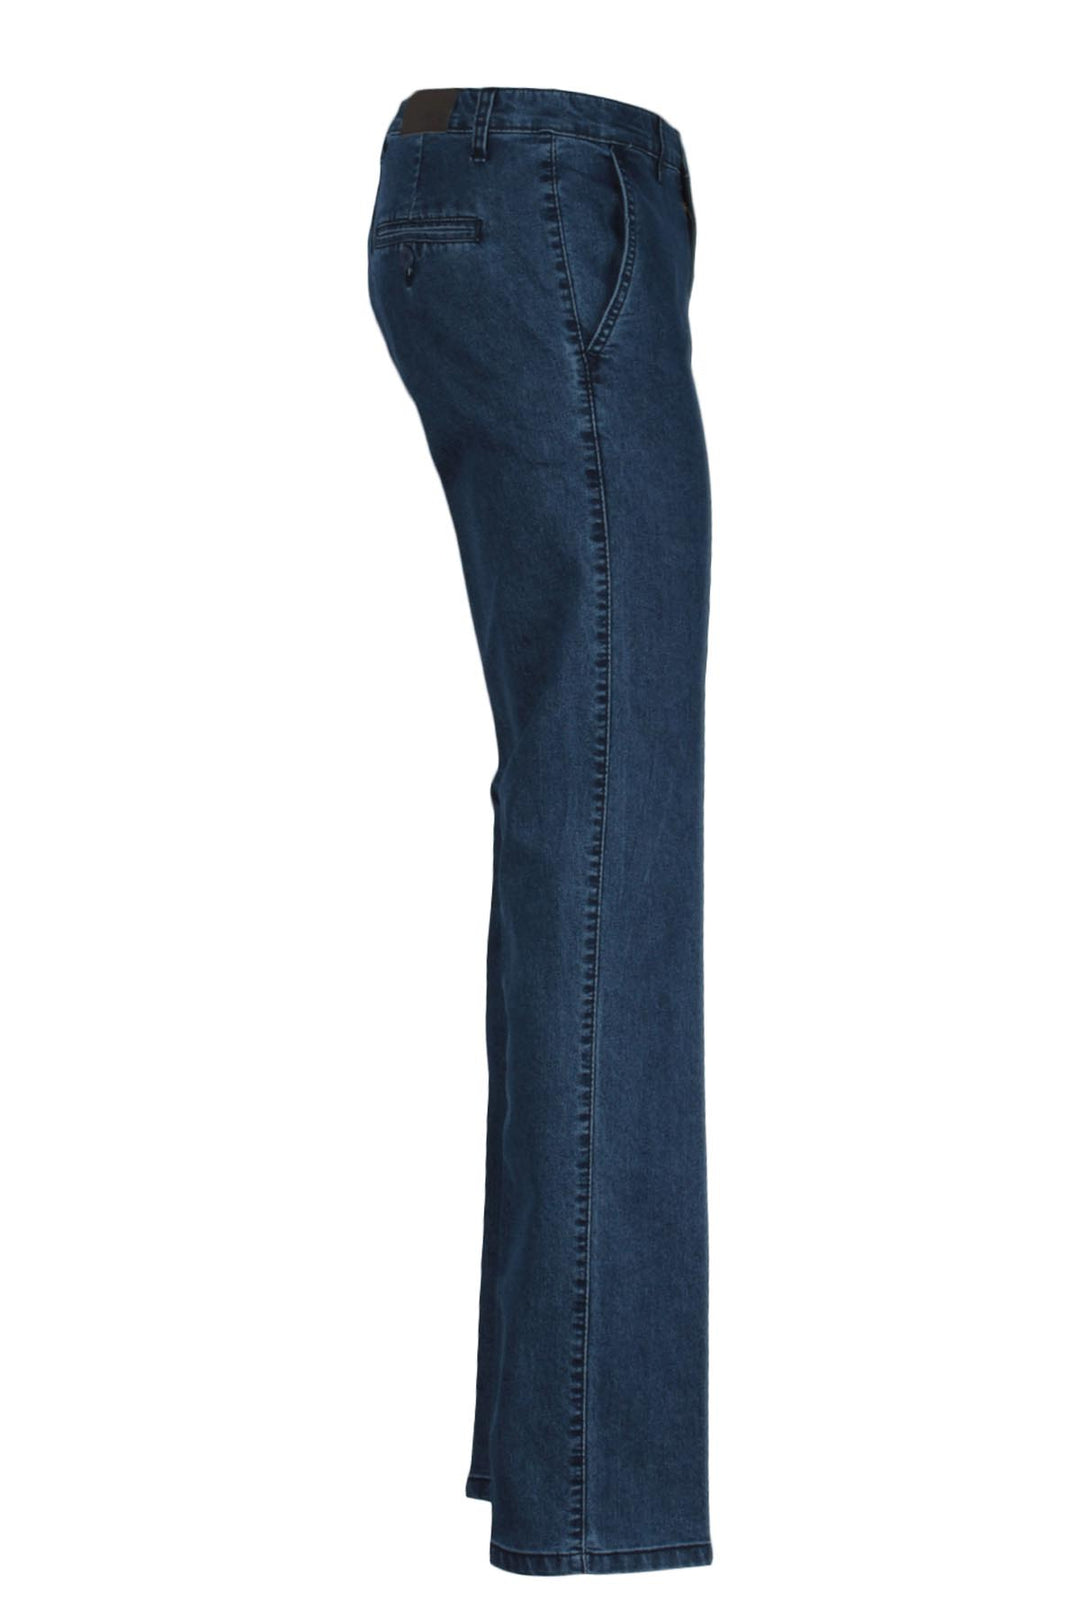 Jeans uomo modello chino Coveri Collection